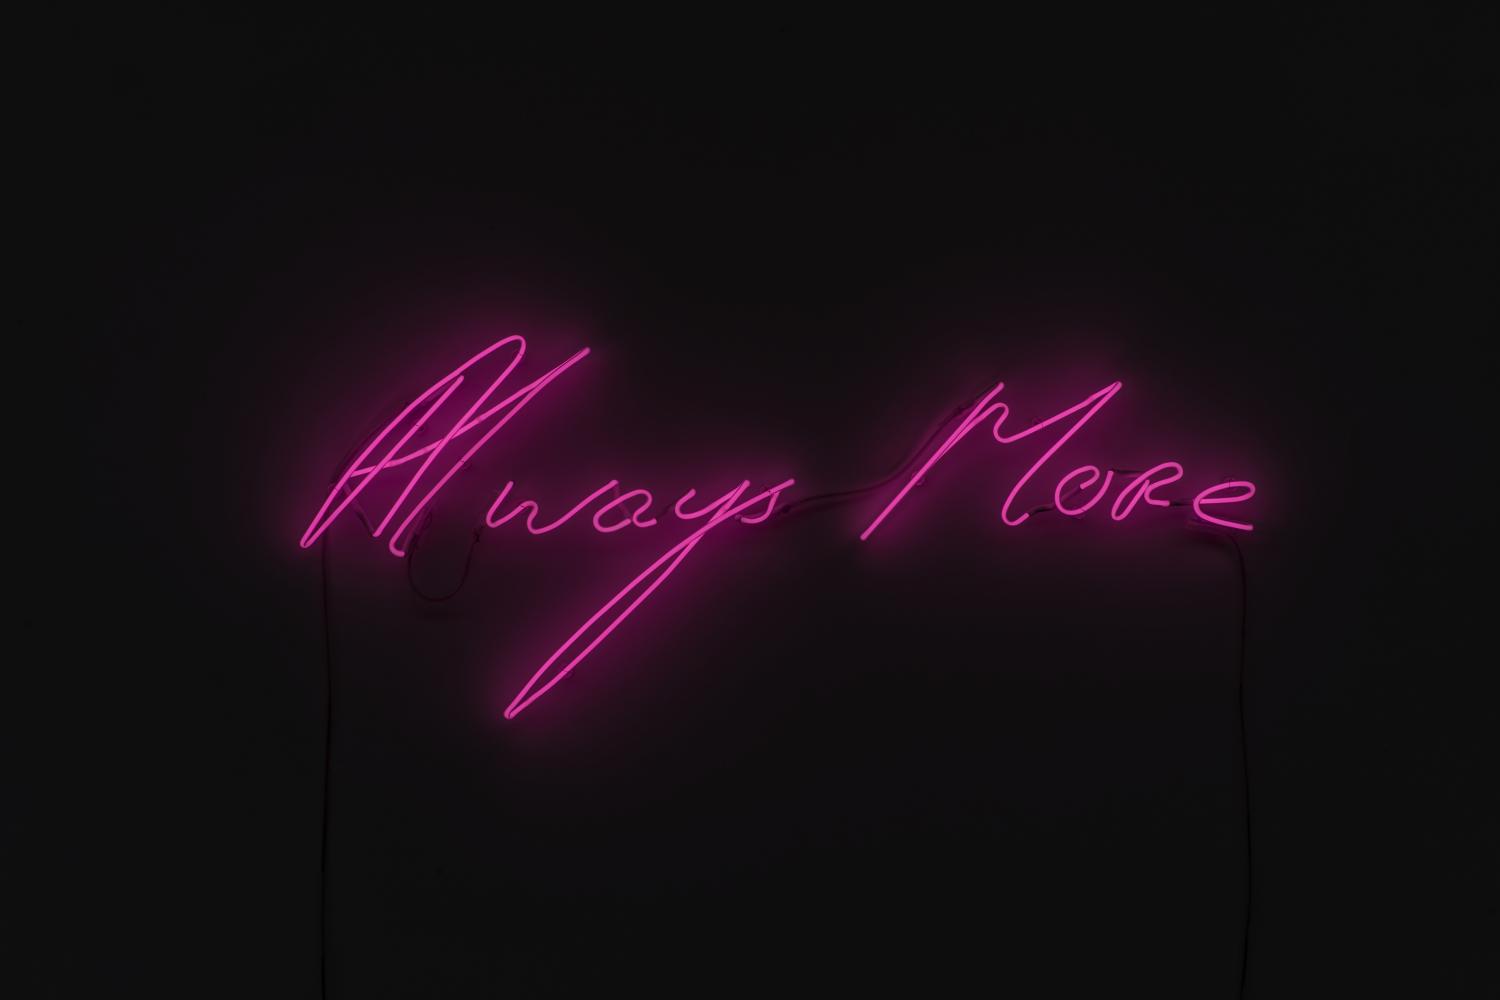 Tracey Emin "Always More", zu sehen in der Main Section der Frieze Seoul bei White Cube